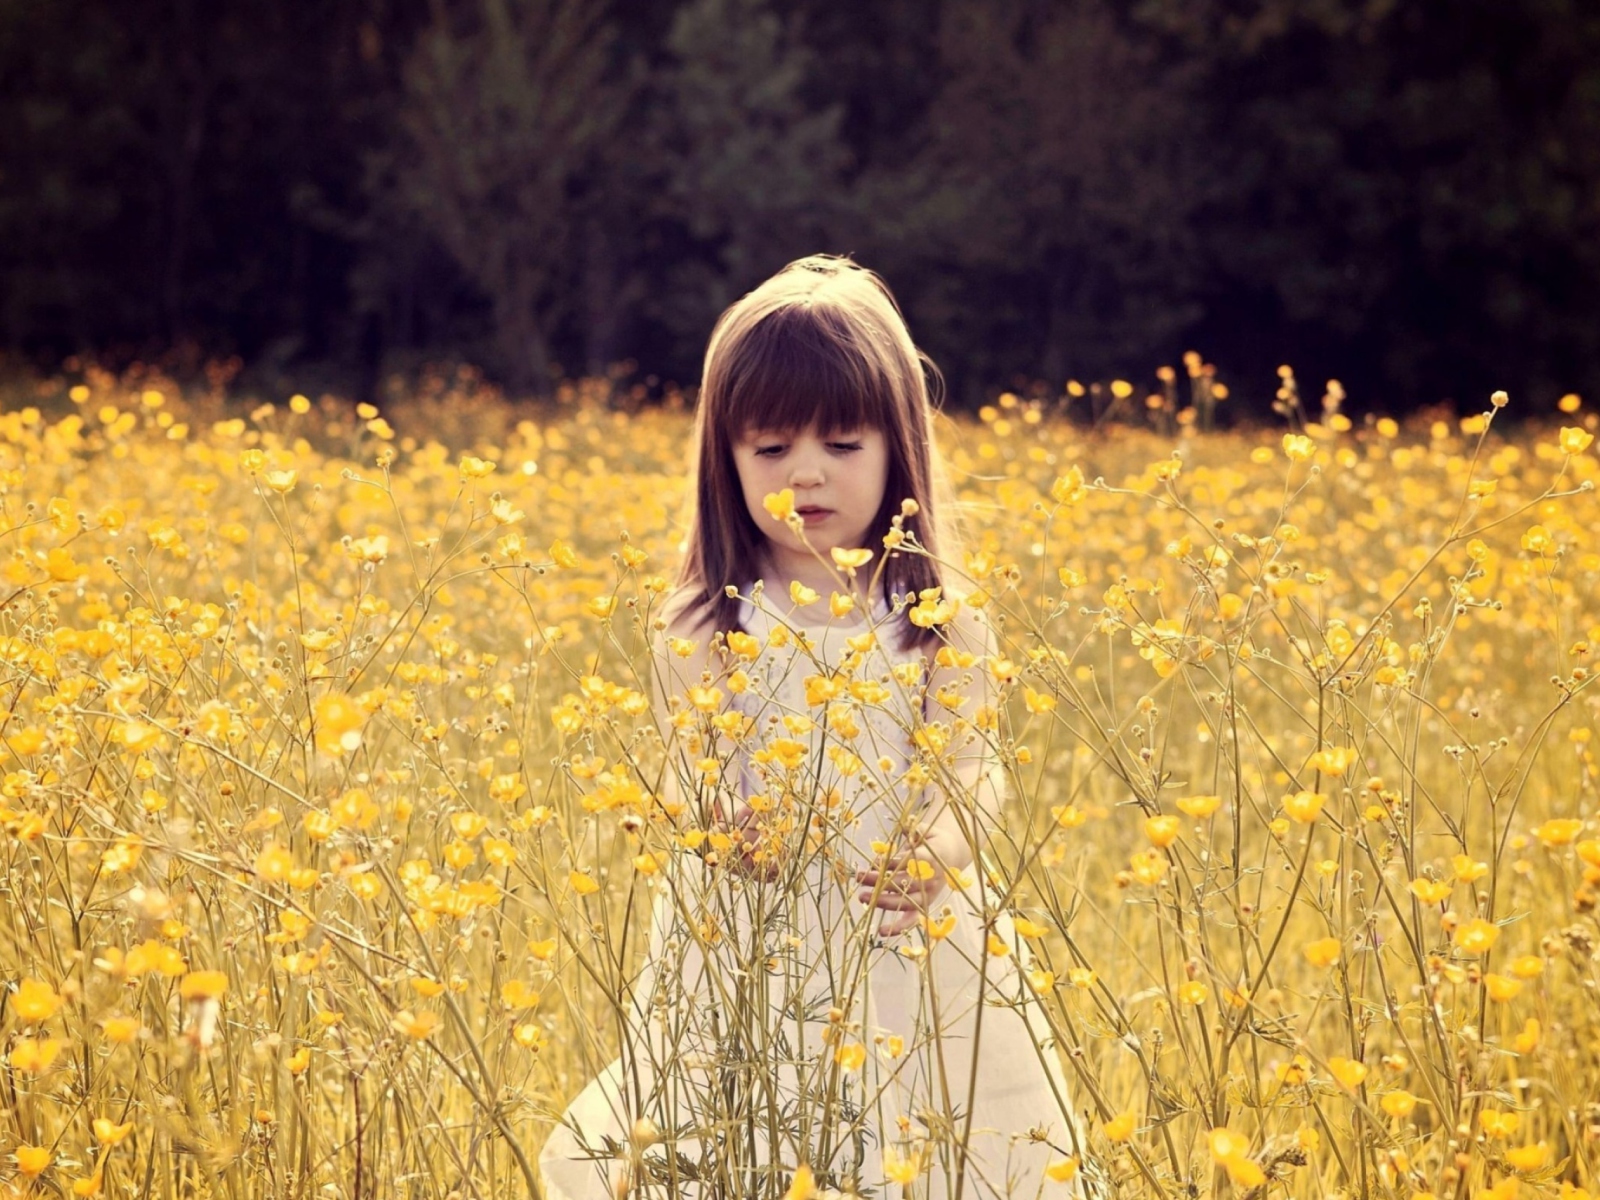 Das Cute Little Girl In Flower Field Wallpaper 1600x1200